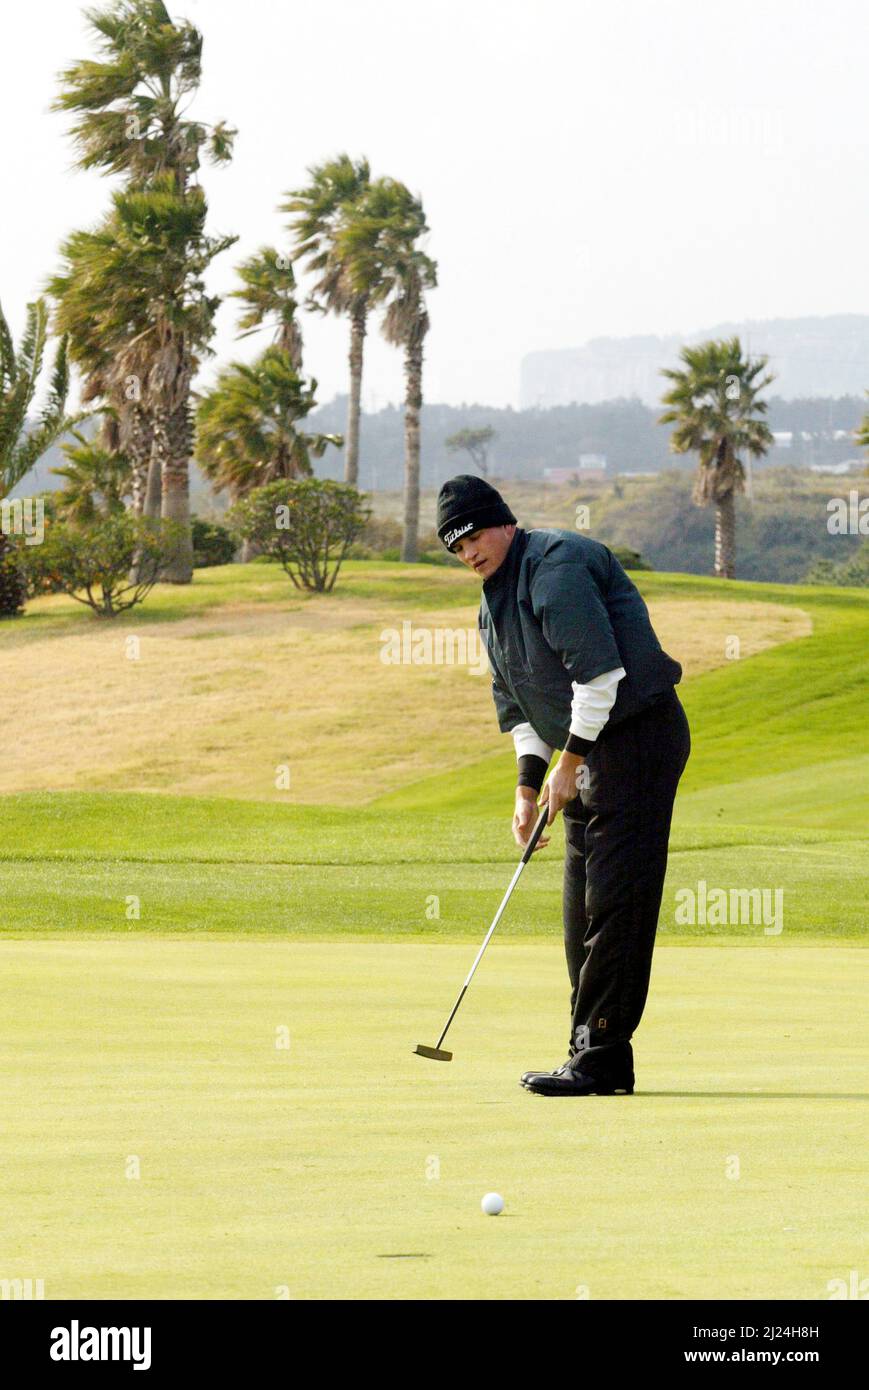 26 de noviembre de 2004-Seogwipo, Corea del Sur-Zach Johnson Poniendo a jugar en un PGA TOUR Championship 2round trece salas en Jeju Island el 26 de noviembre de 2004, Corea del Sur. Foto de stock